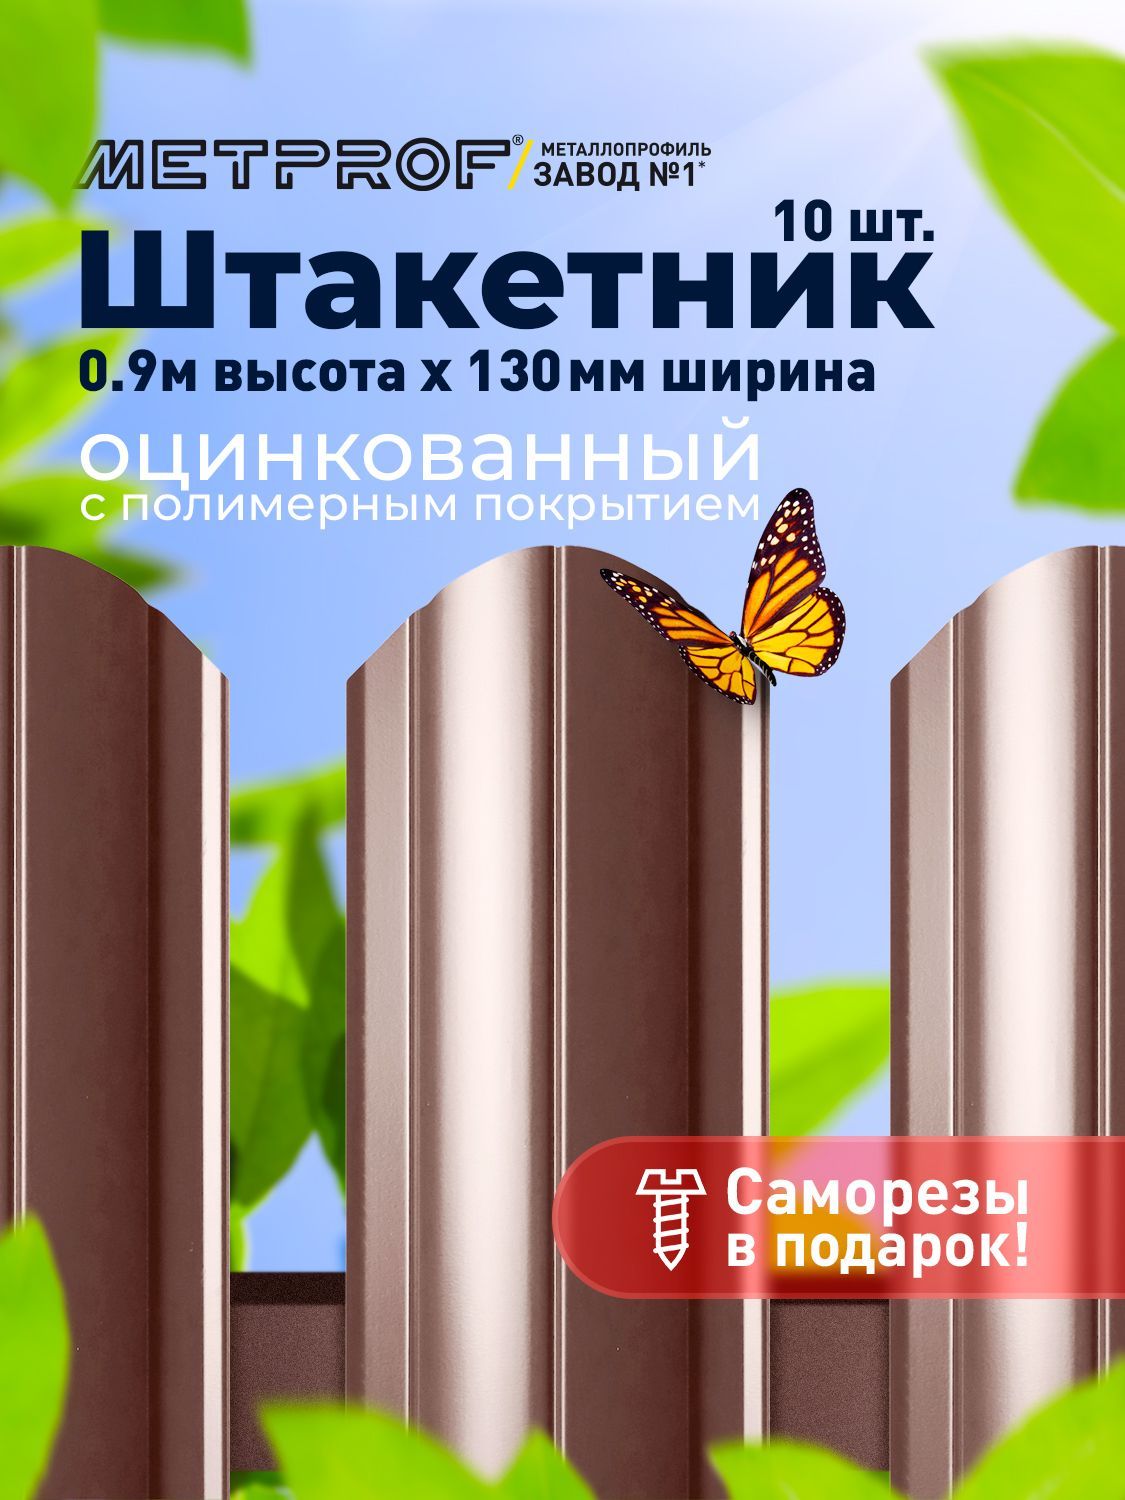 ЕвроштакетникLineметаллический/заборы/0.45толщина,цвет8017/8017(Шоколад)10шт.0.9м